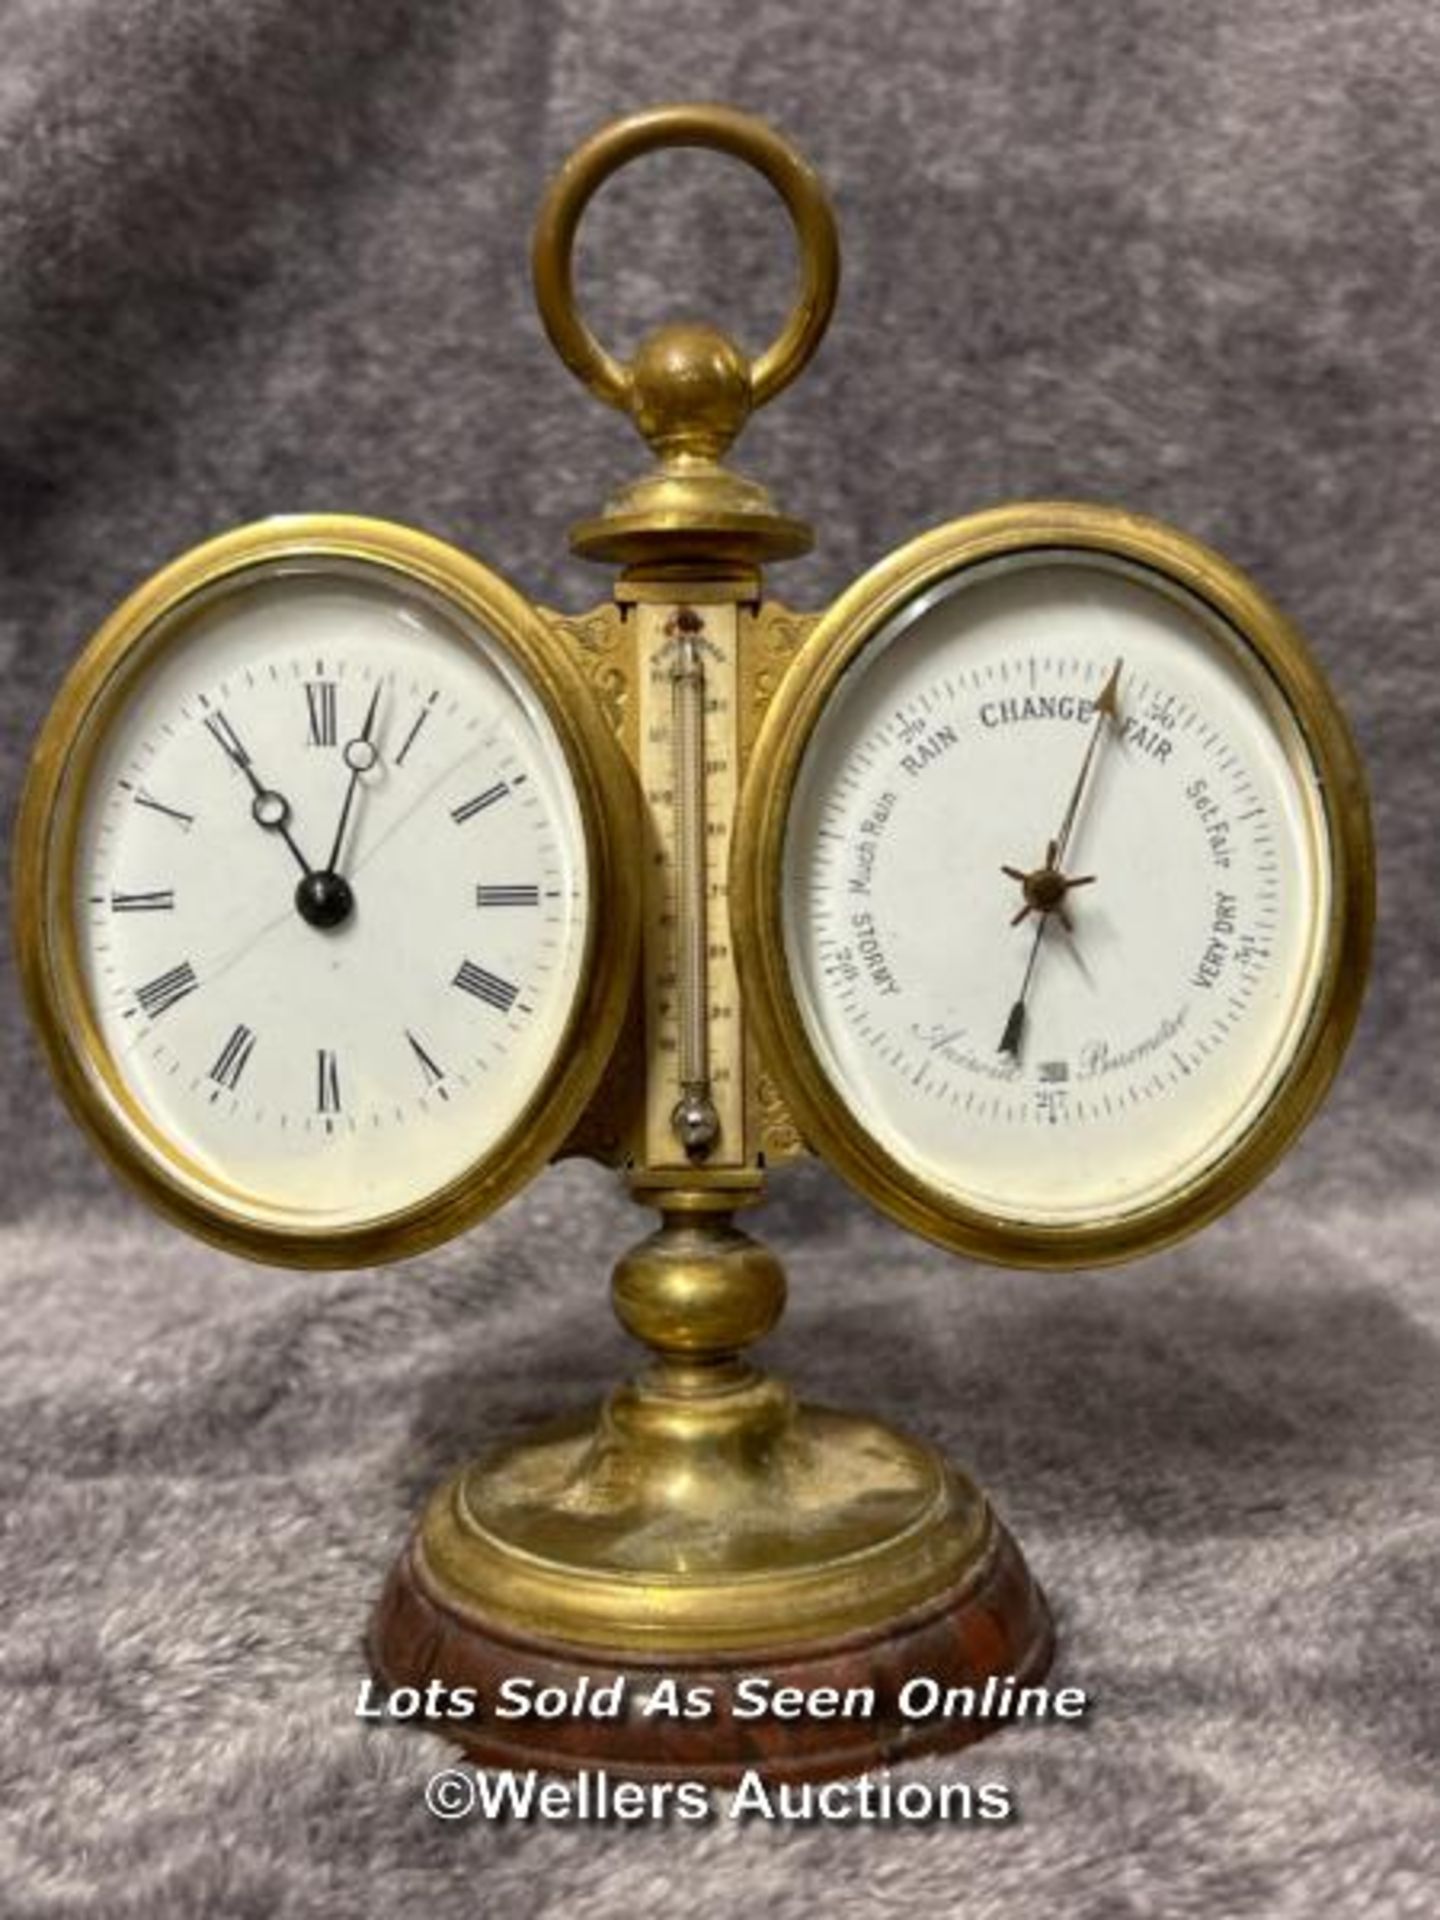 Antique brass desk clock & barameter, 16cm high / AN3